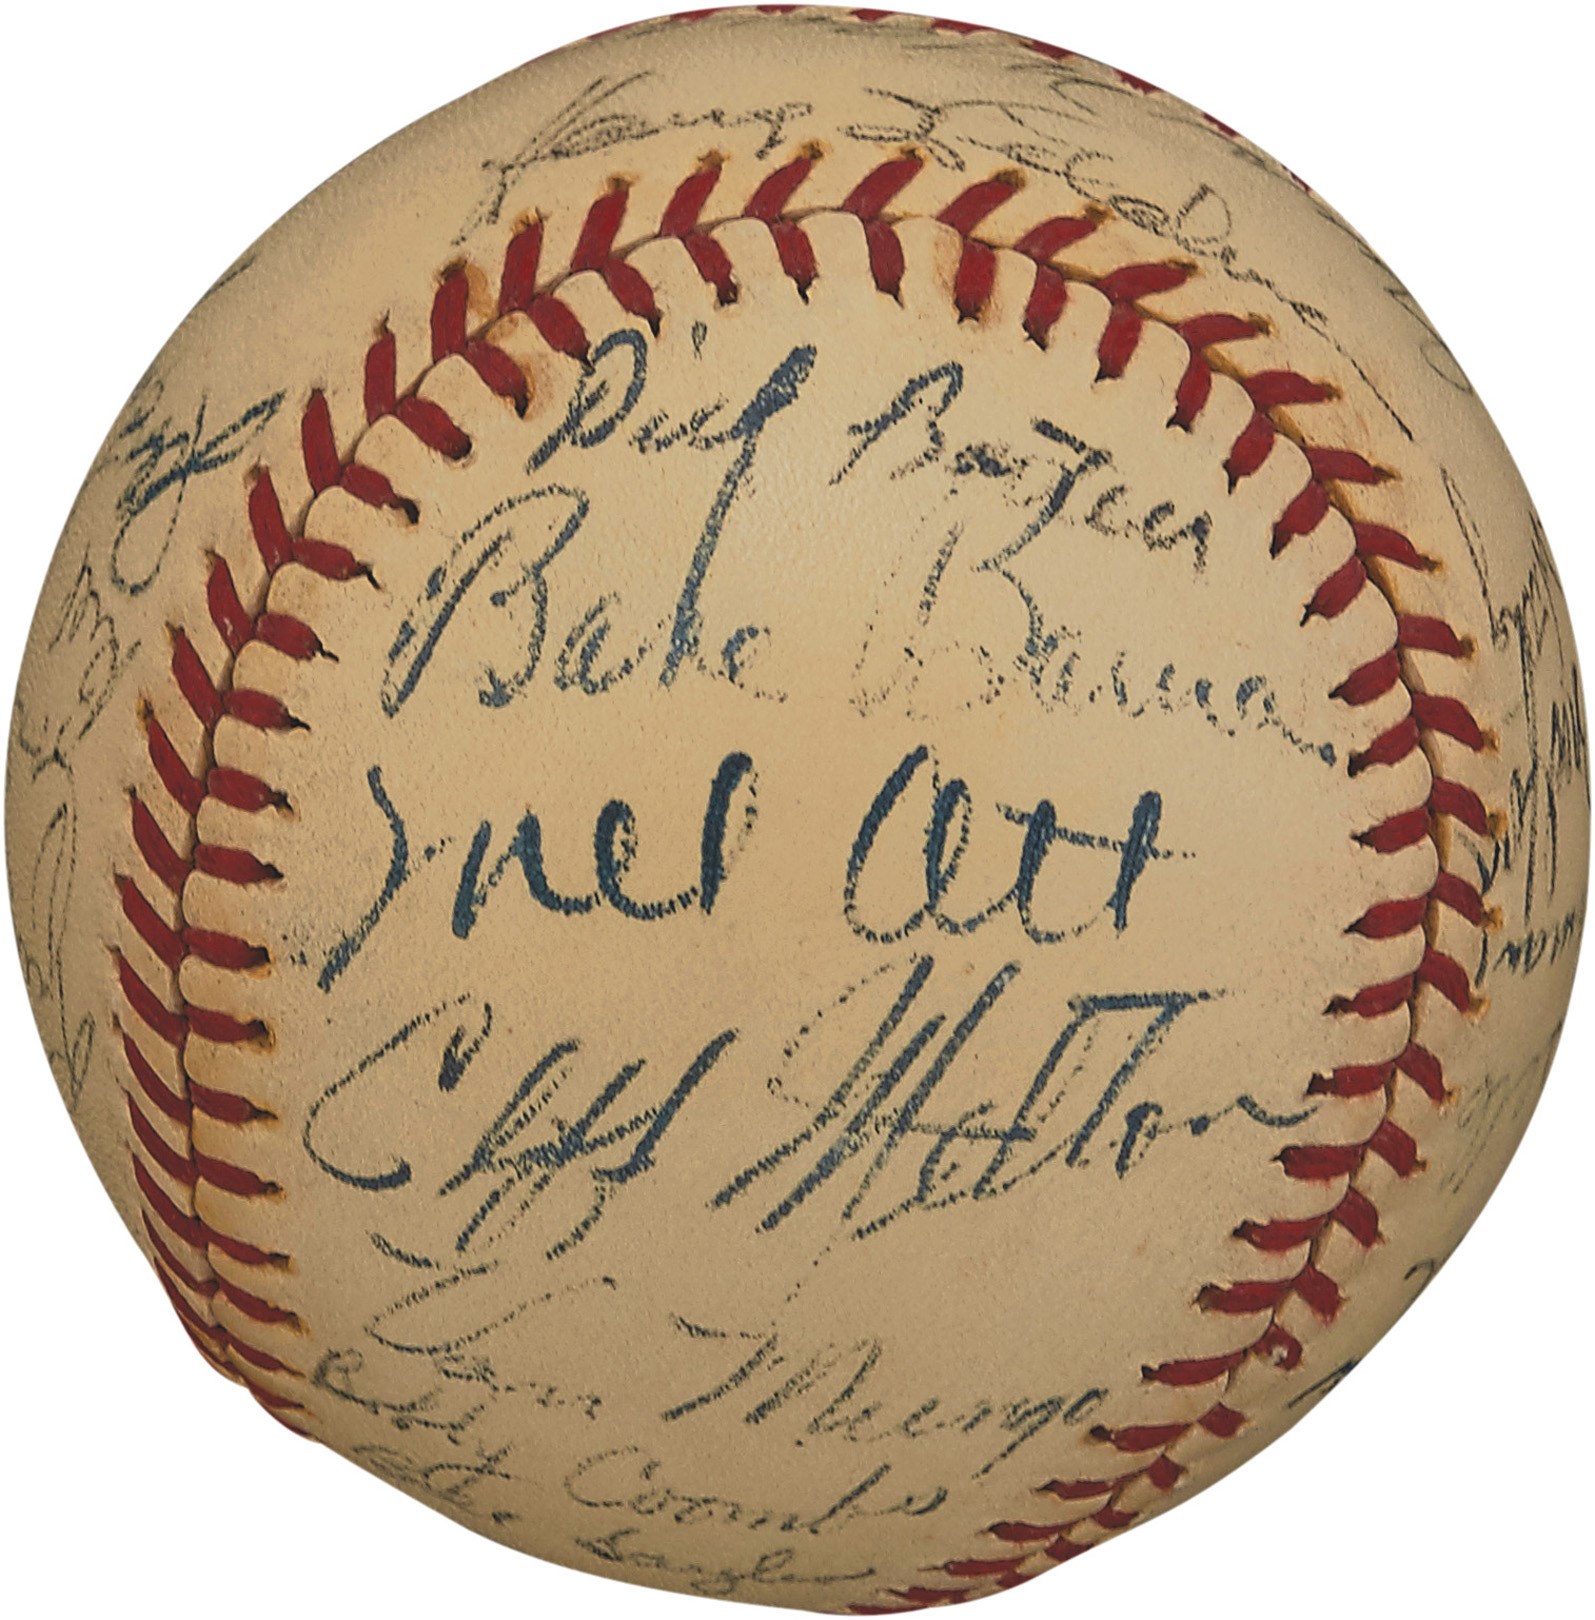 NY Yankees, Giants & Mets - Fine 1942/43 New York Giants Team-Signed Baseball with Mel Ott (JSA)